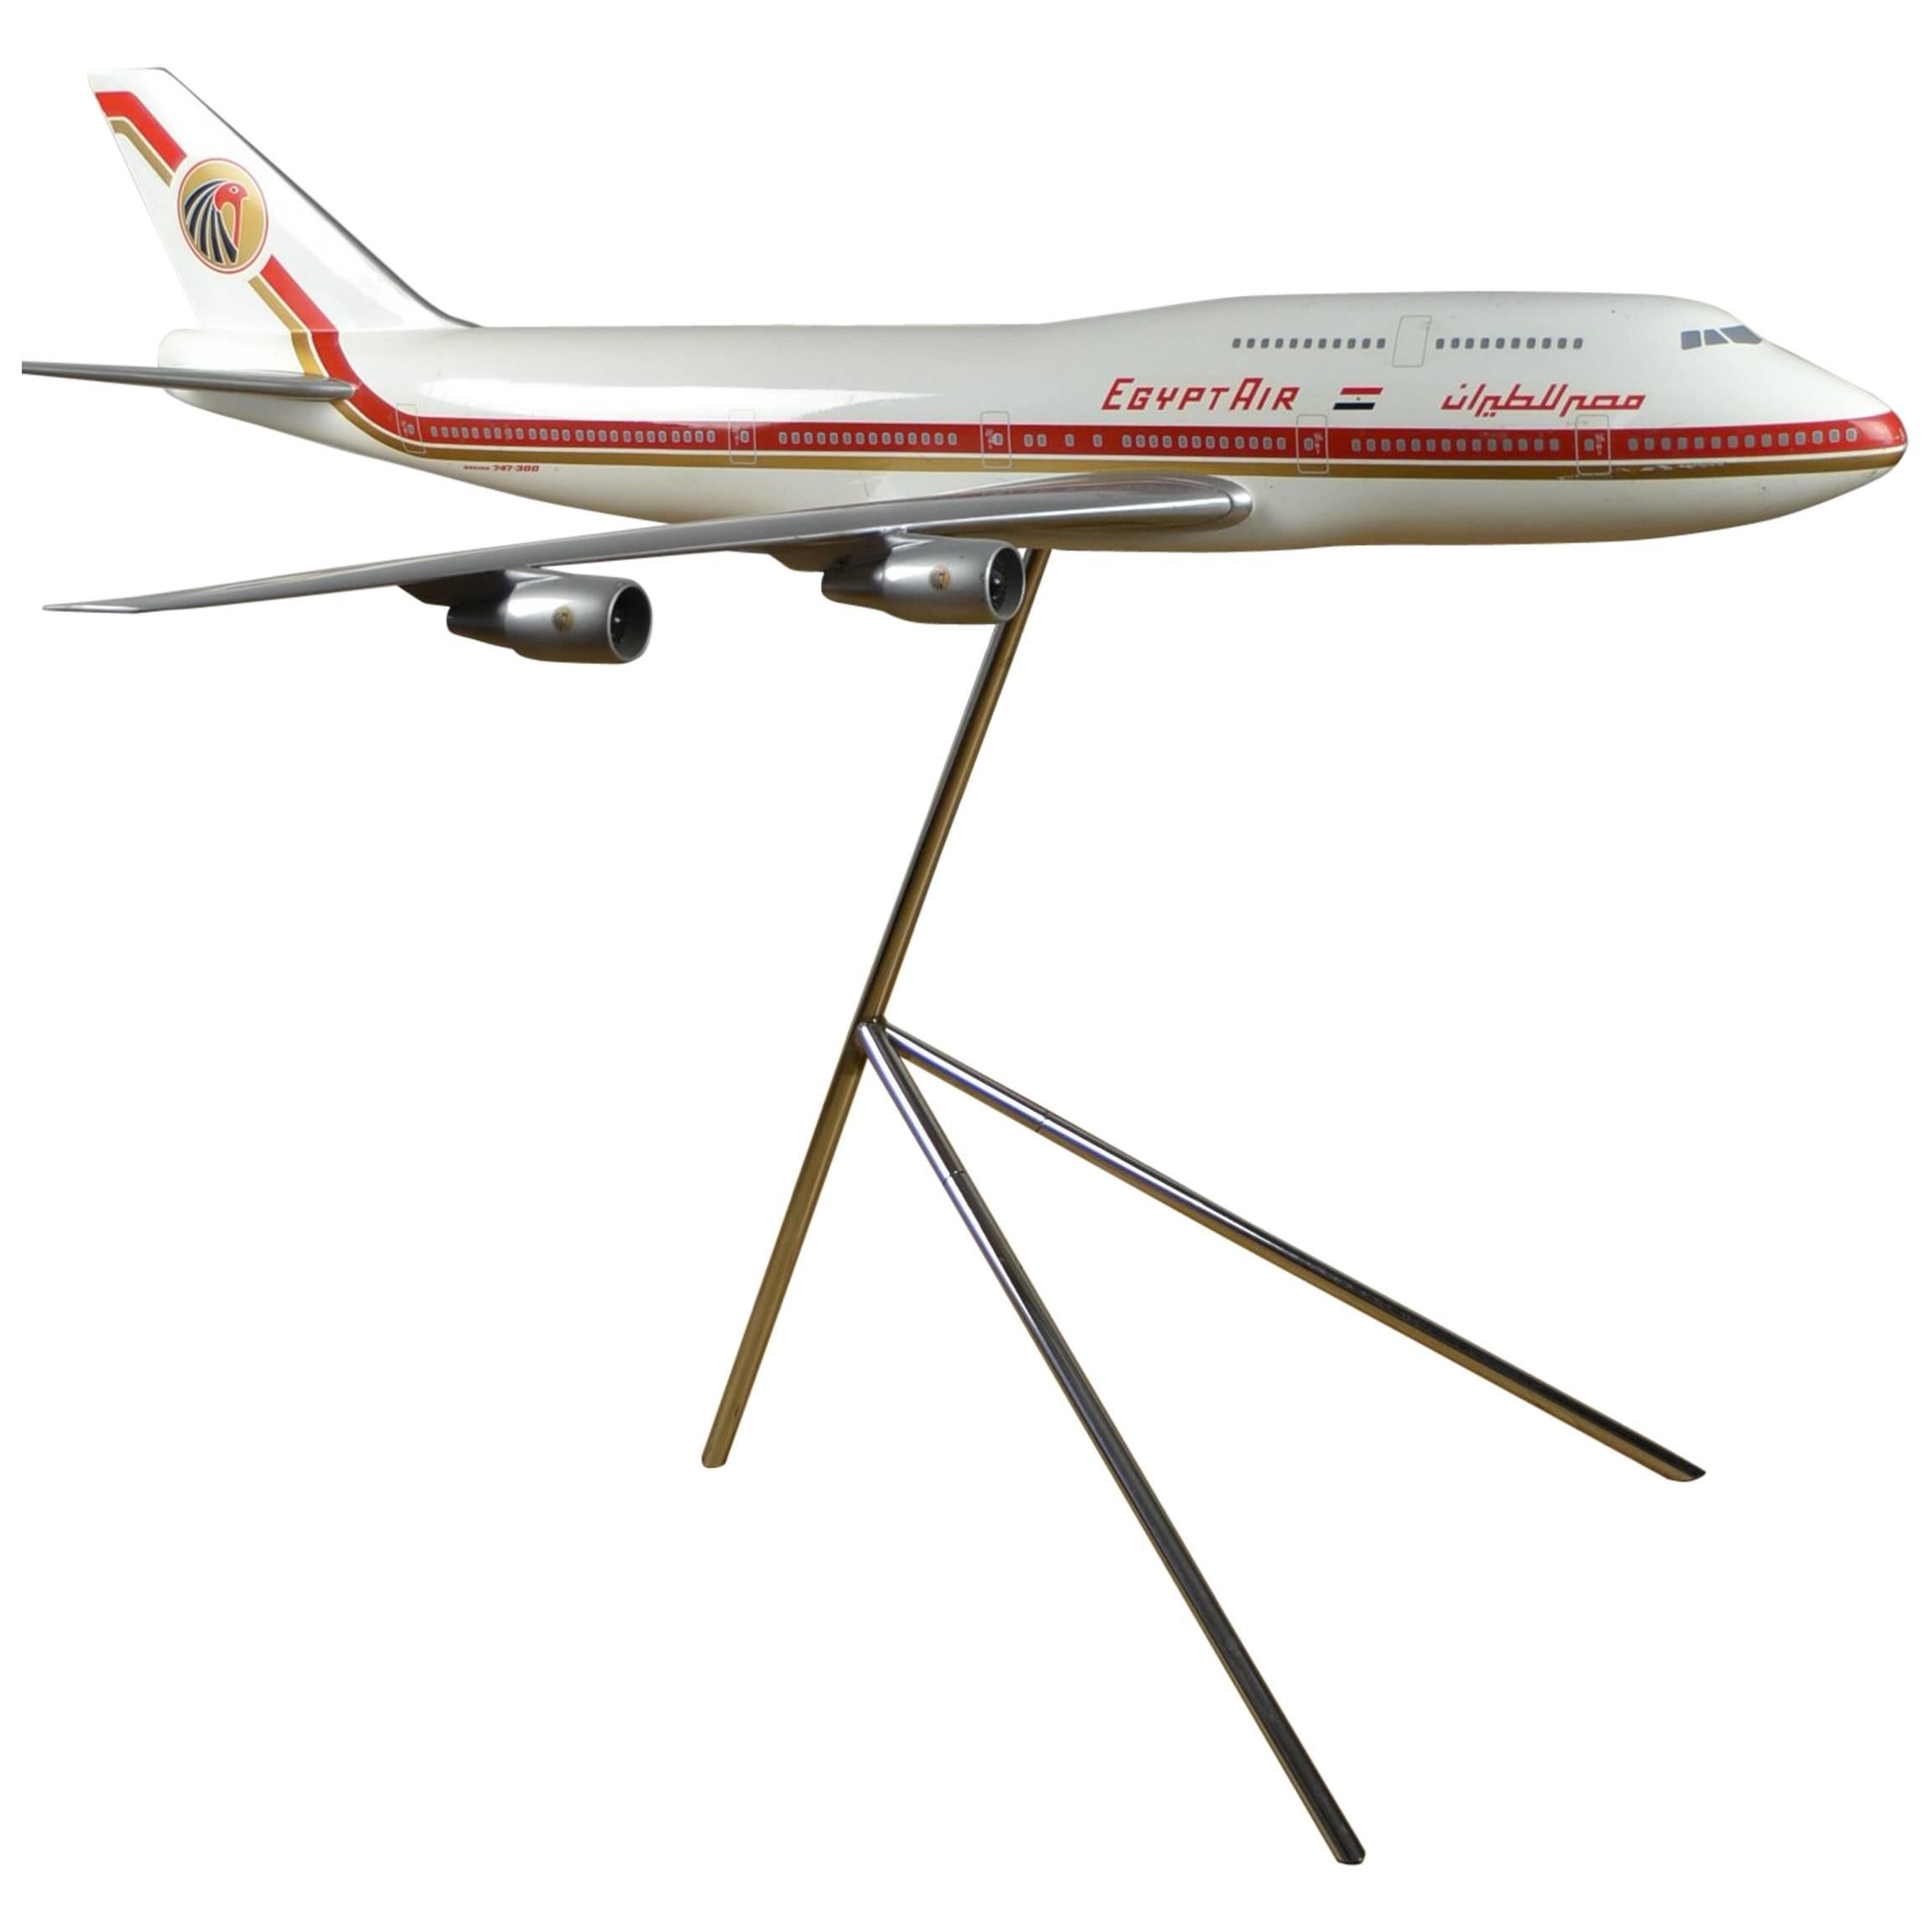 Huge Airplane Boeing, Promotional Model 